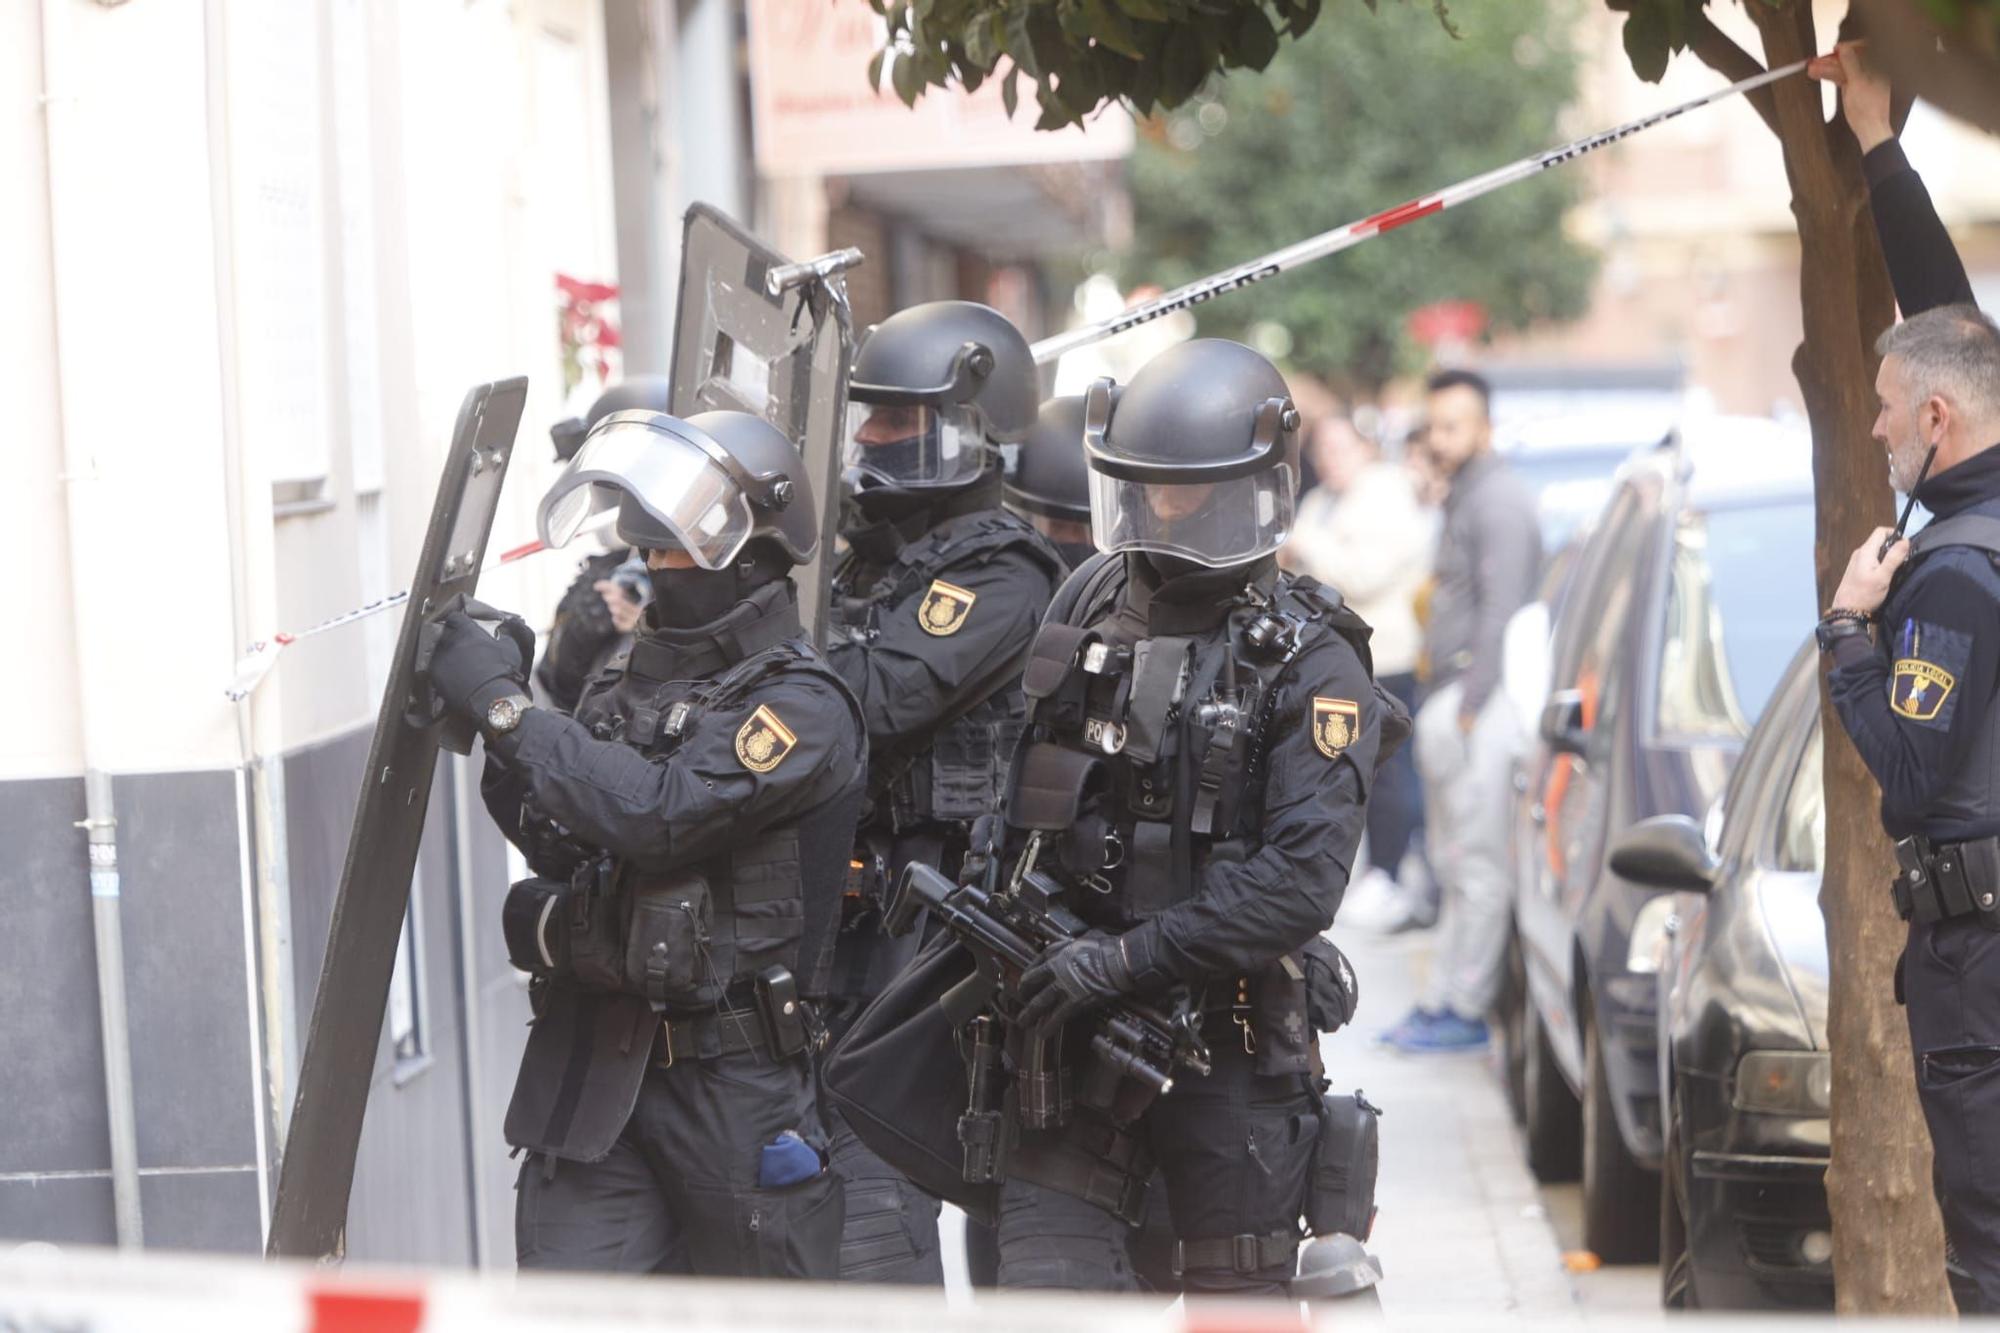 Agentes de la Policía Nacional, tras la actuación en Alaquàs